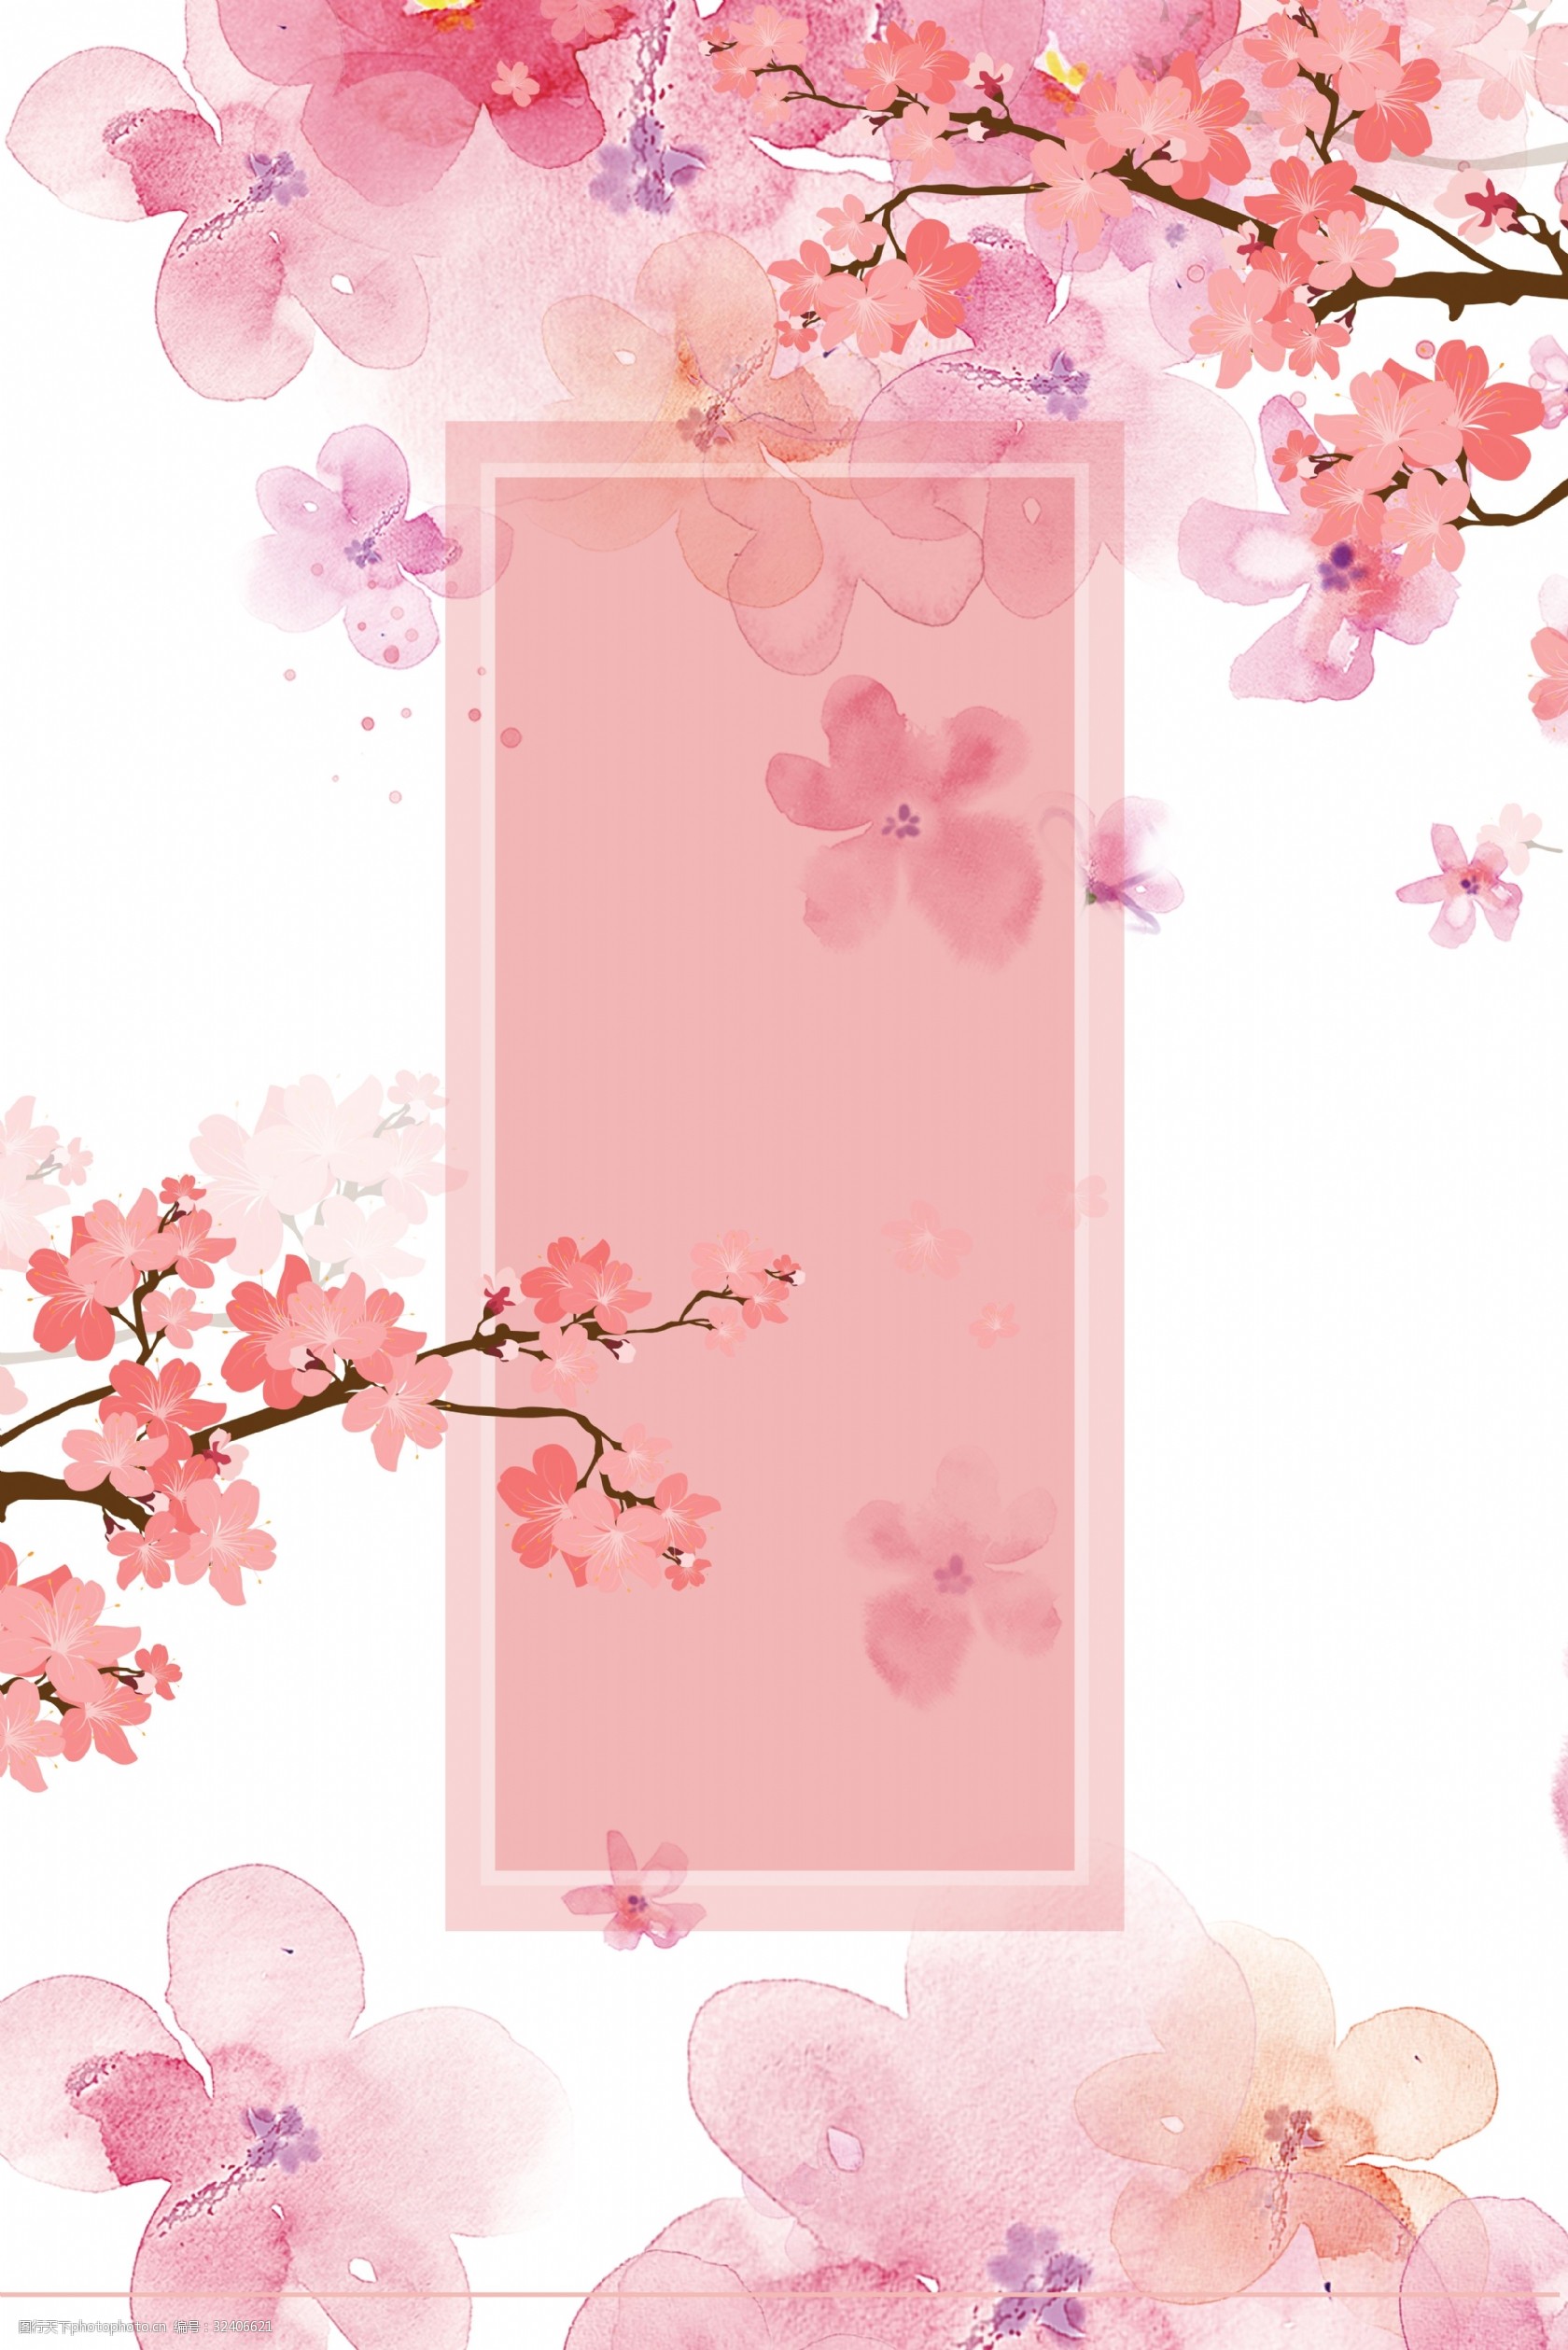 关键词:简约粉色通用背景素材 樱花节 樱花季 唯美 浪漫 元素 素材